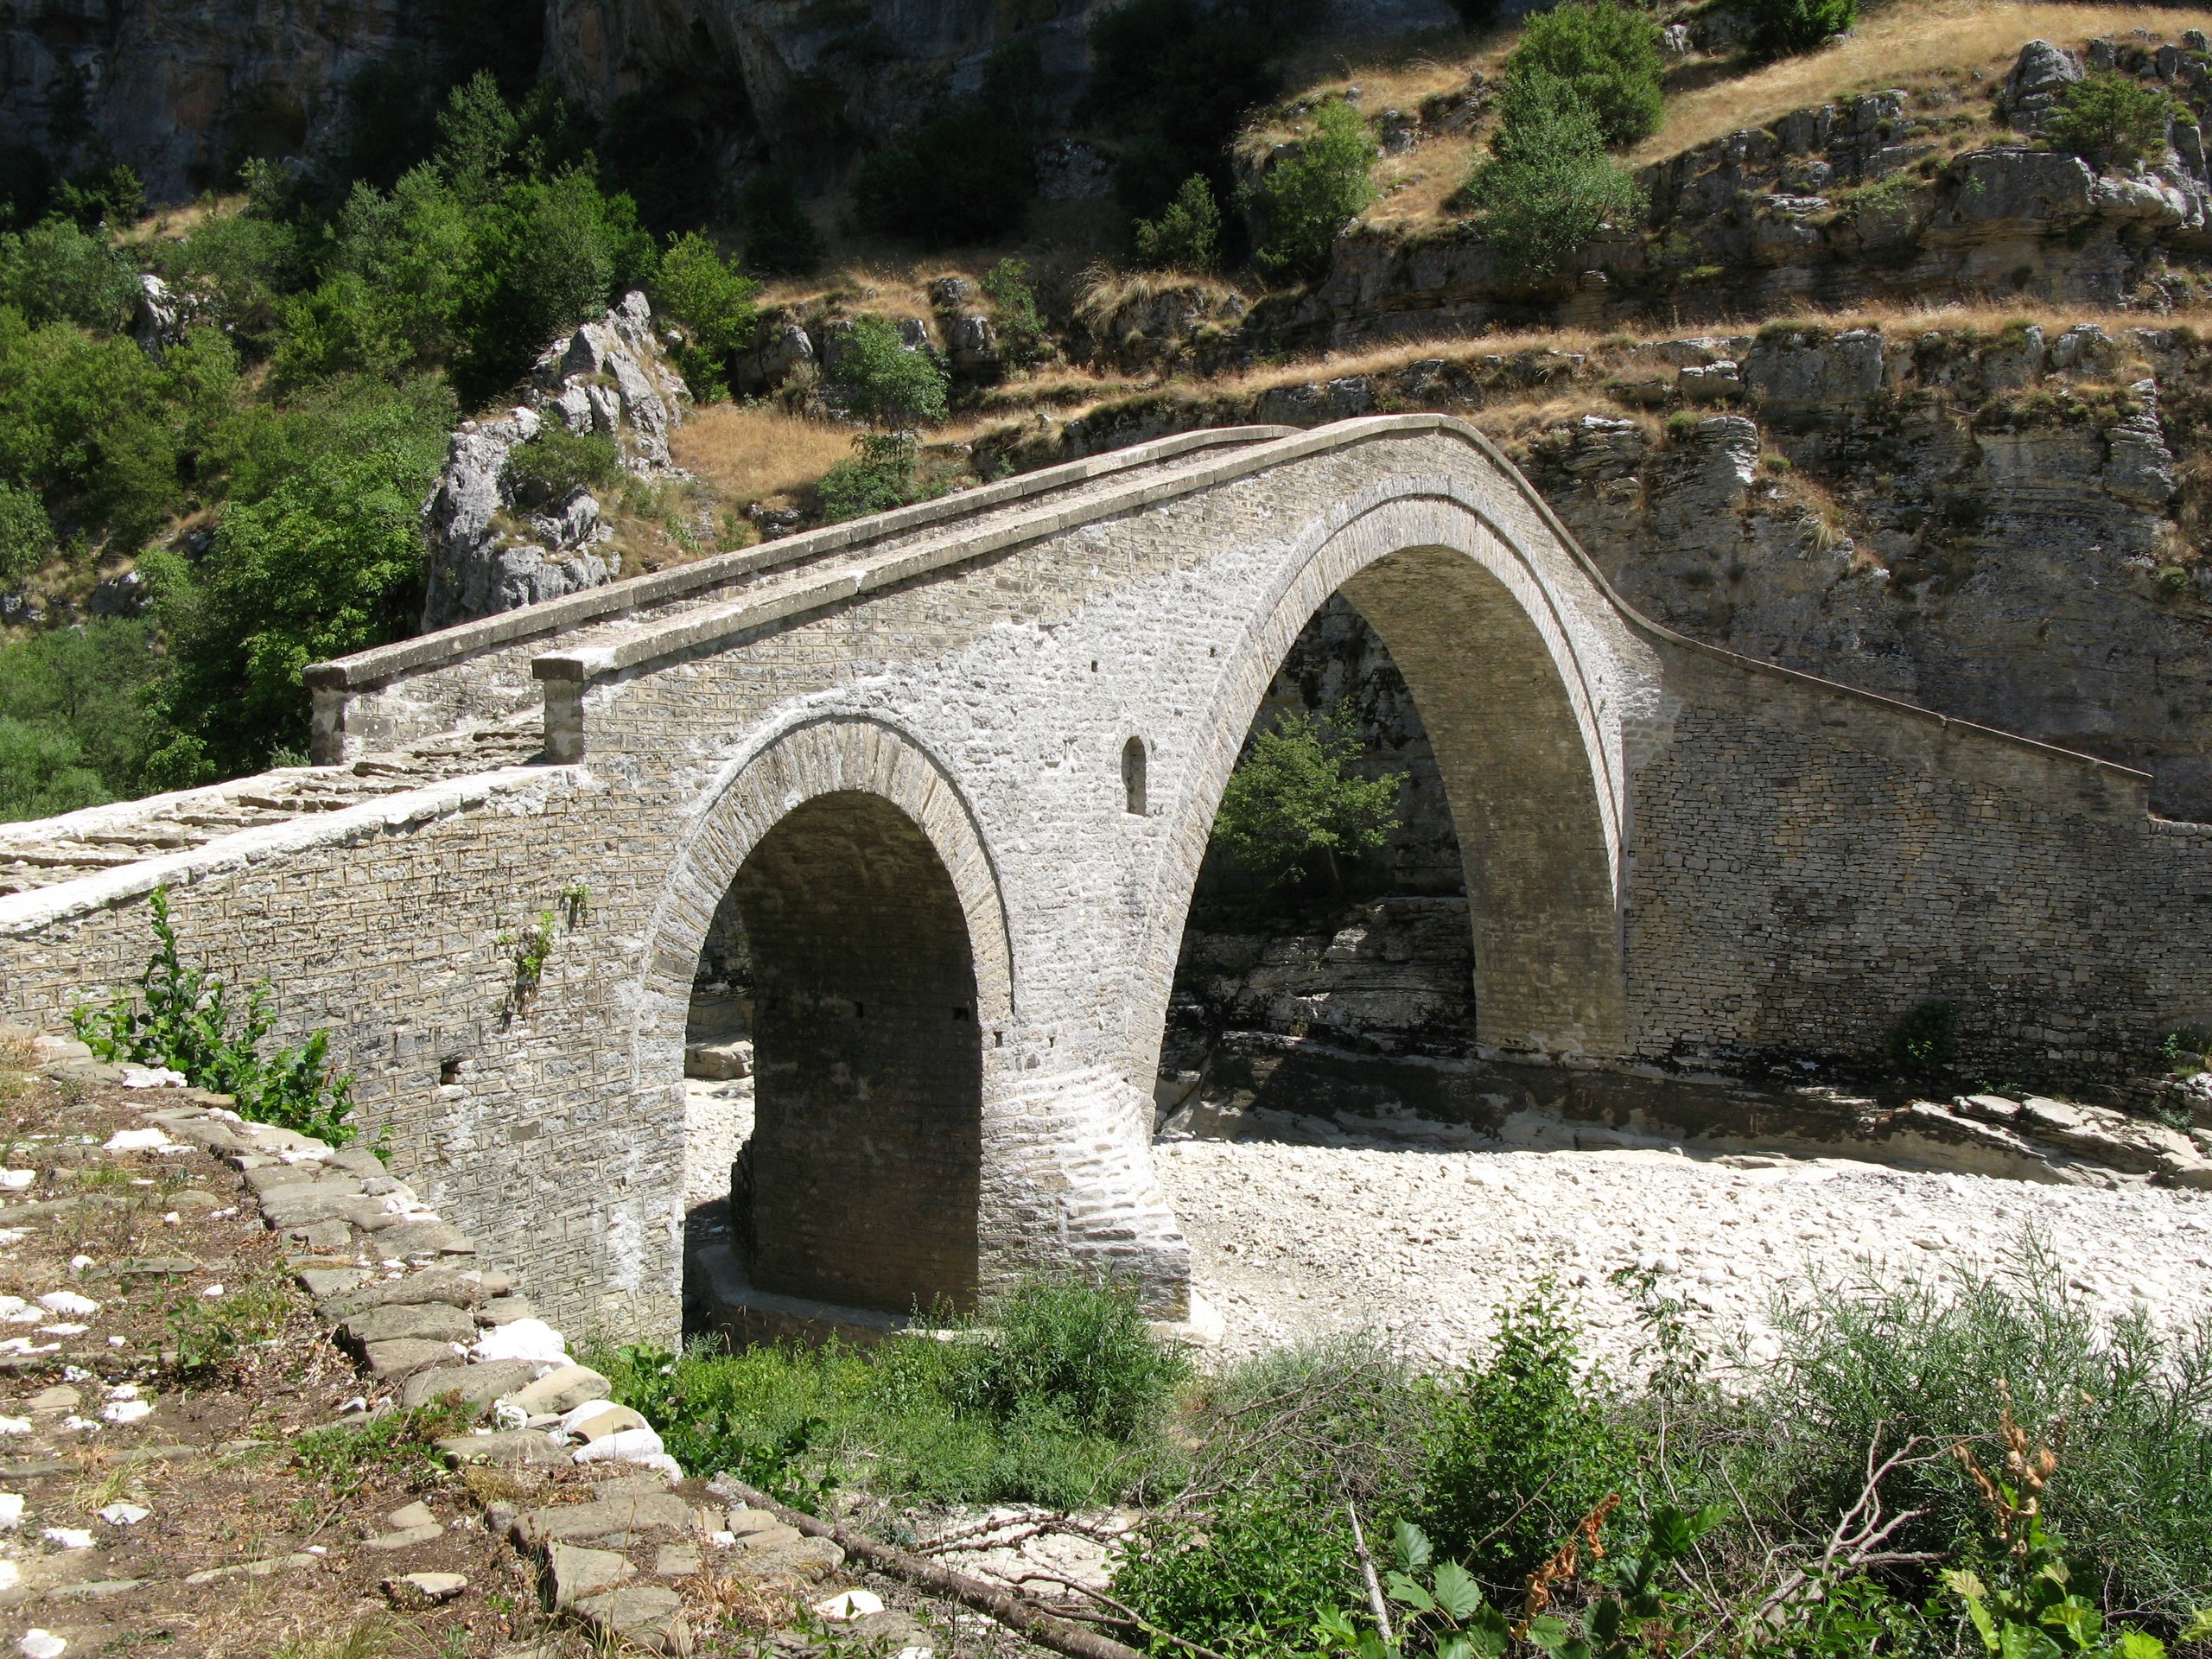 Stone river over the bridge in Greece